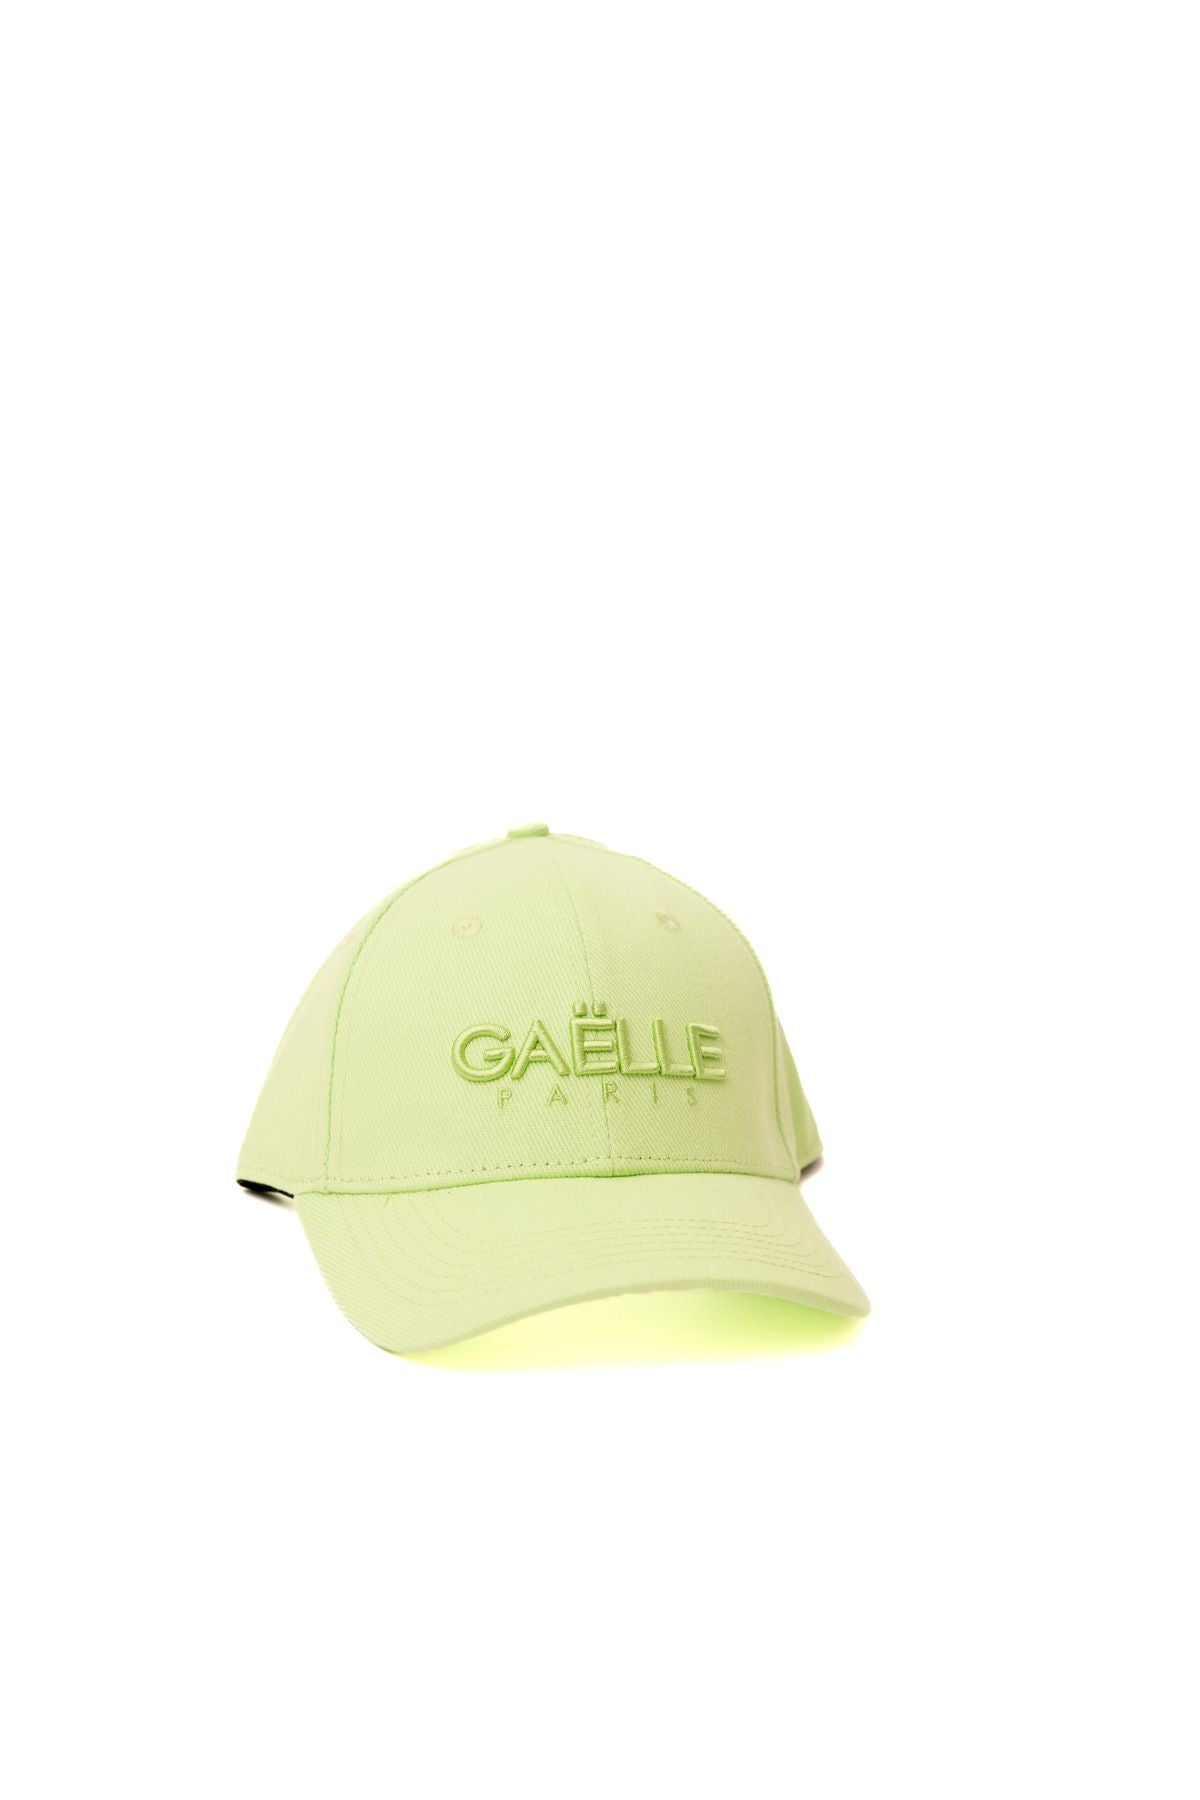 gbadp4357verde - cappello - GAELLE PARIS